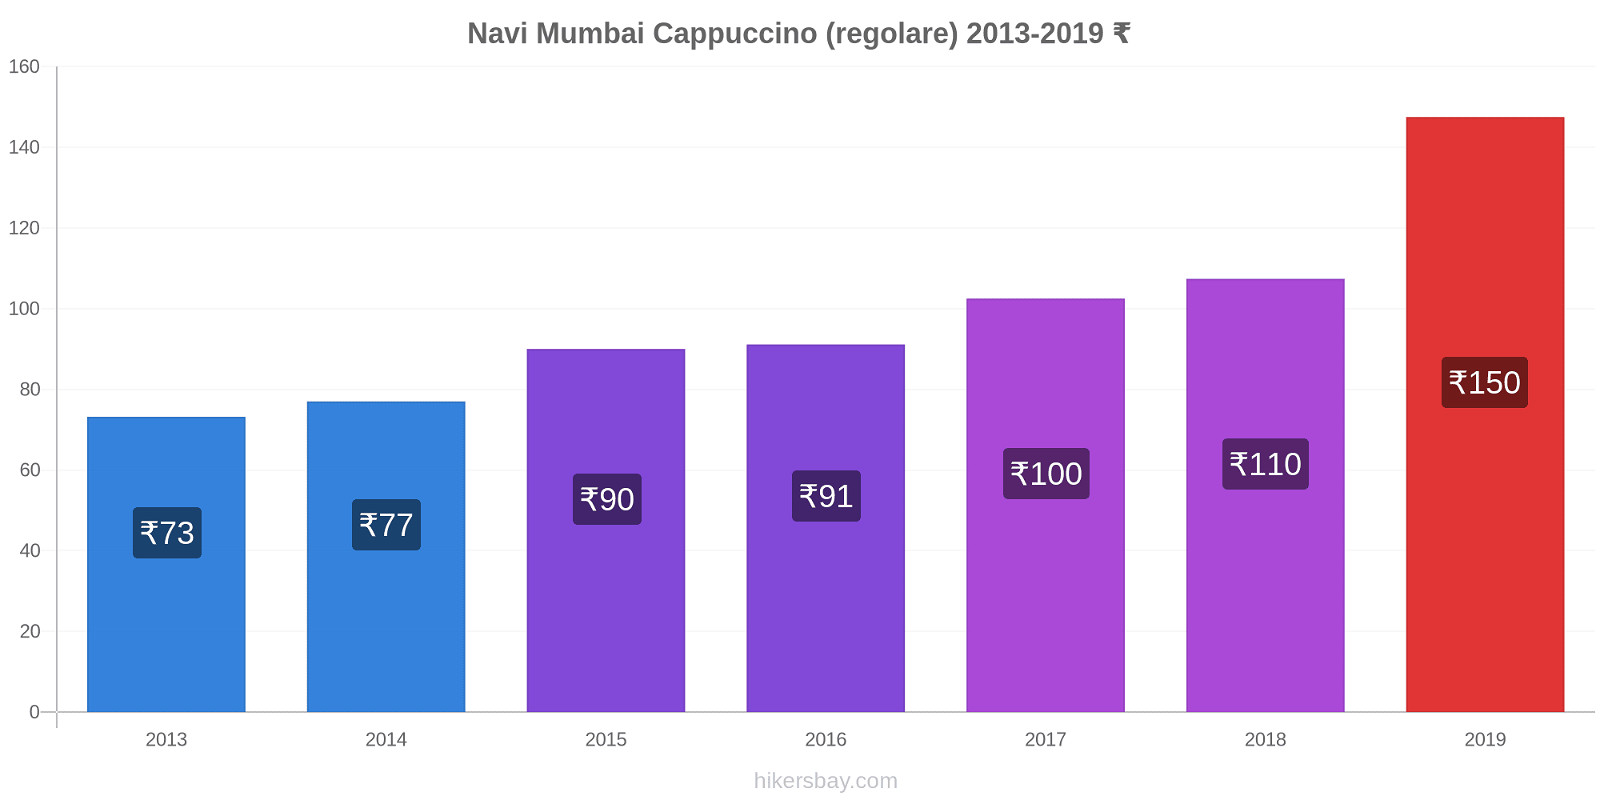 Navi Mumbai variazioni di prezzo Cappuccino (normale) hikersbay.com